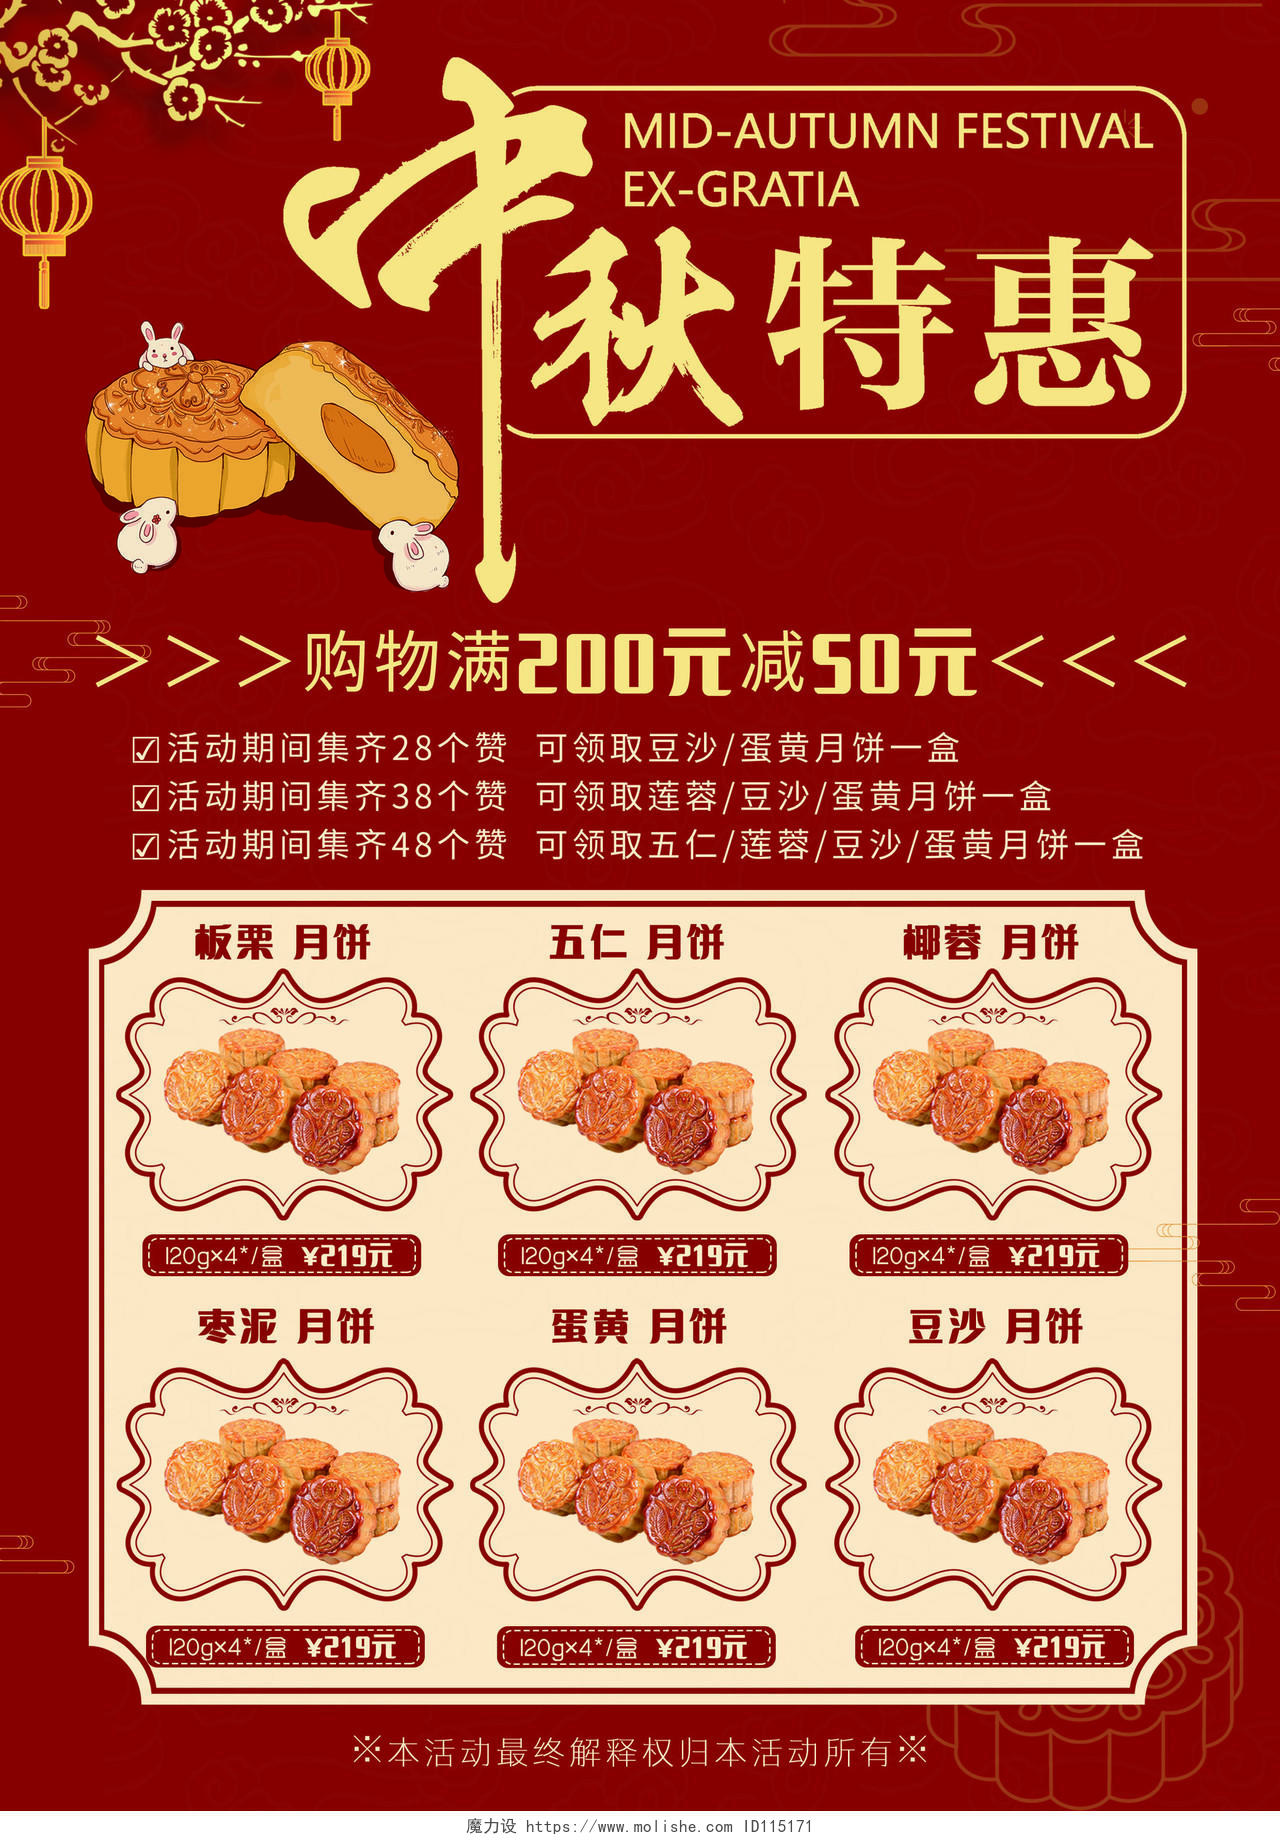 红色背景剪纸风福满中秋中秋节中秋月饼宣传单